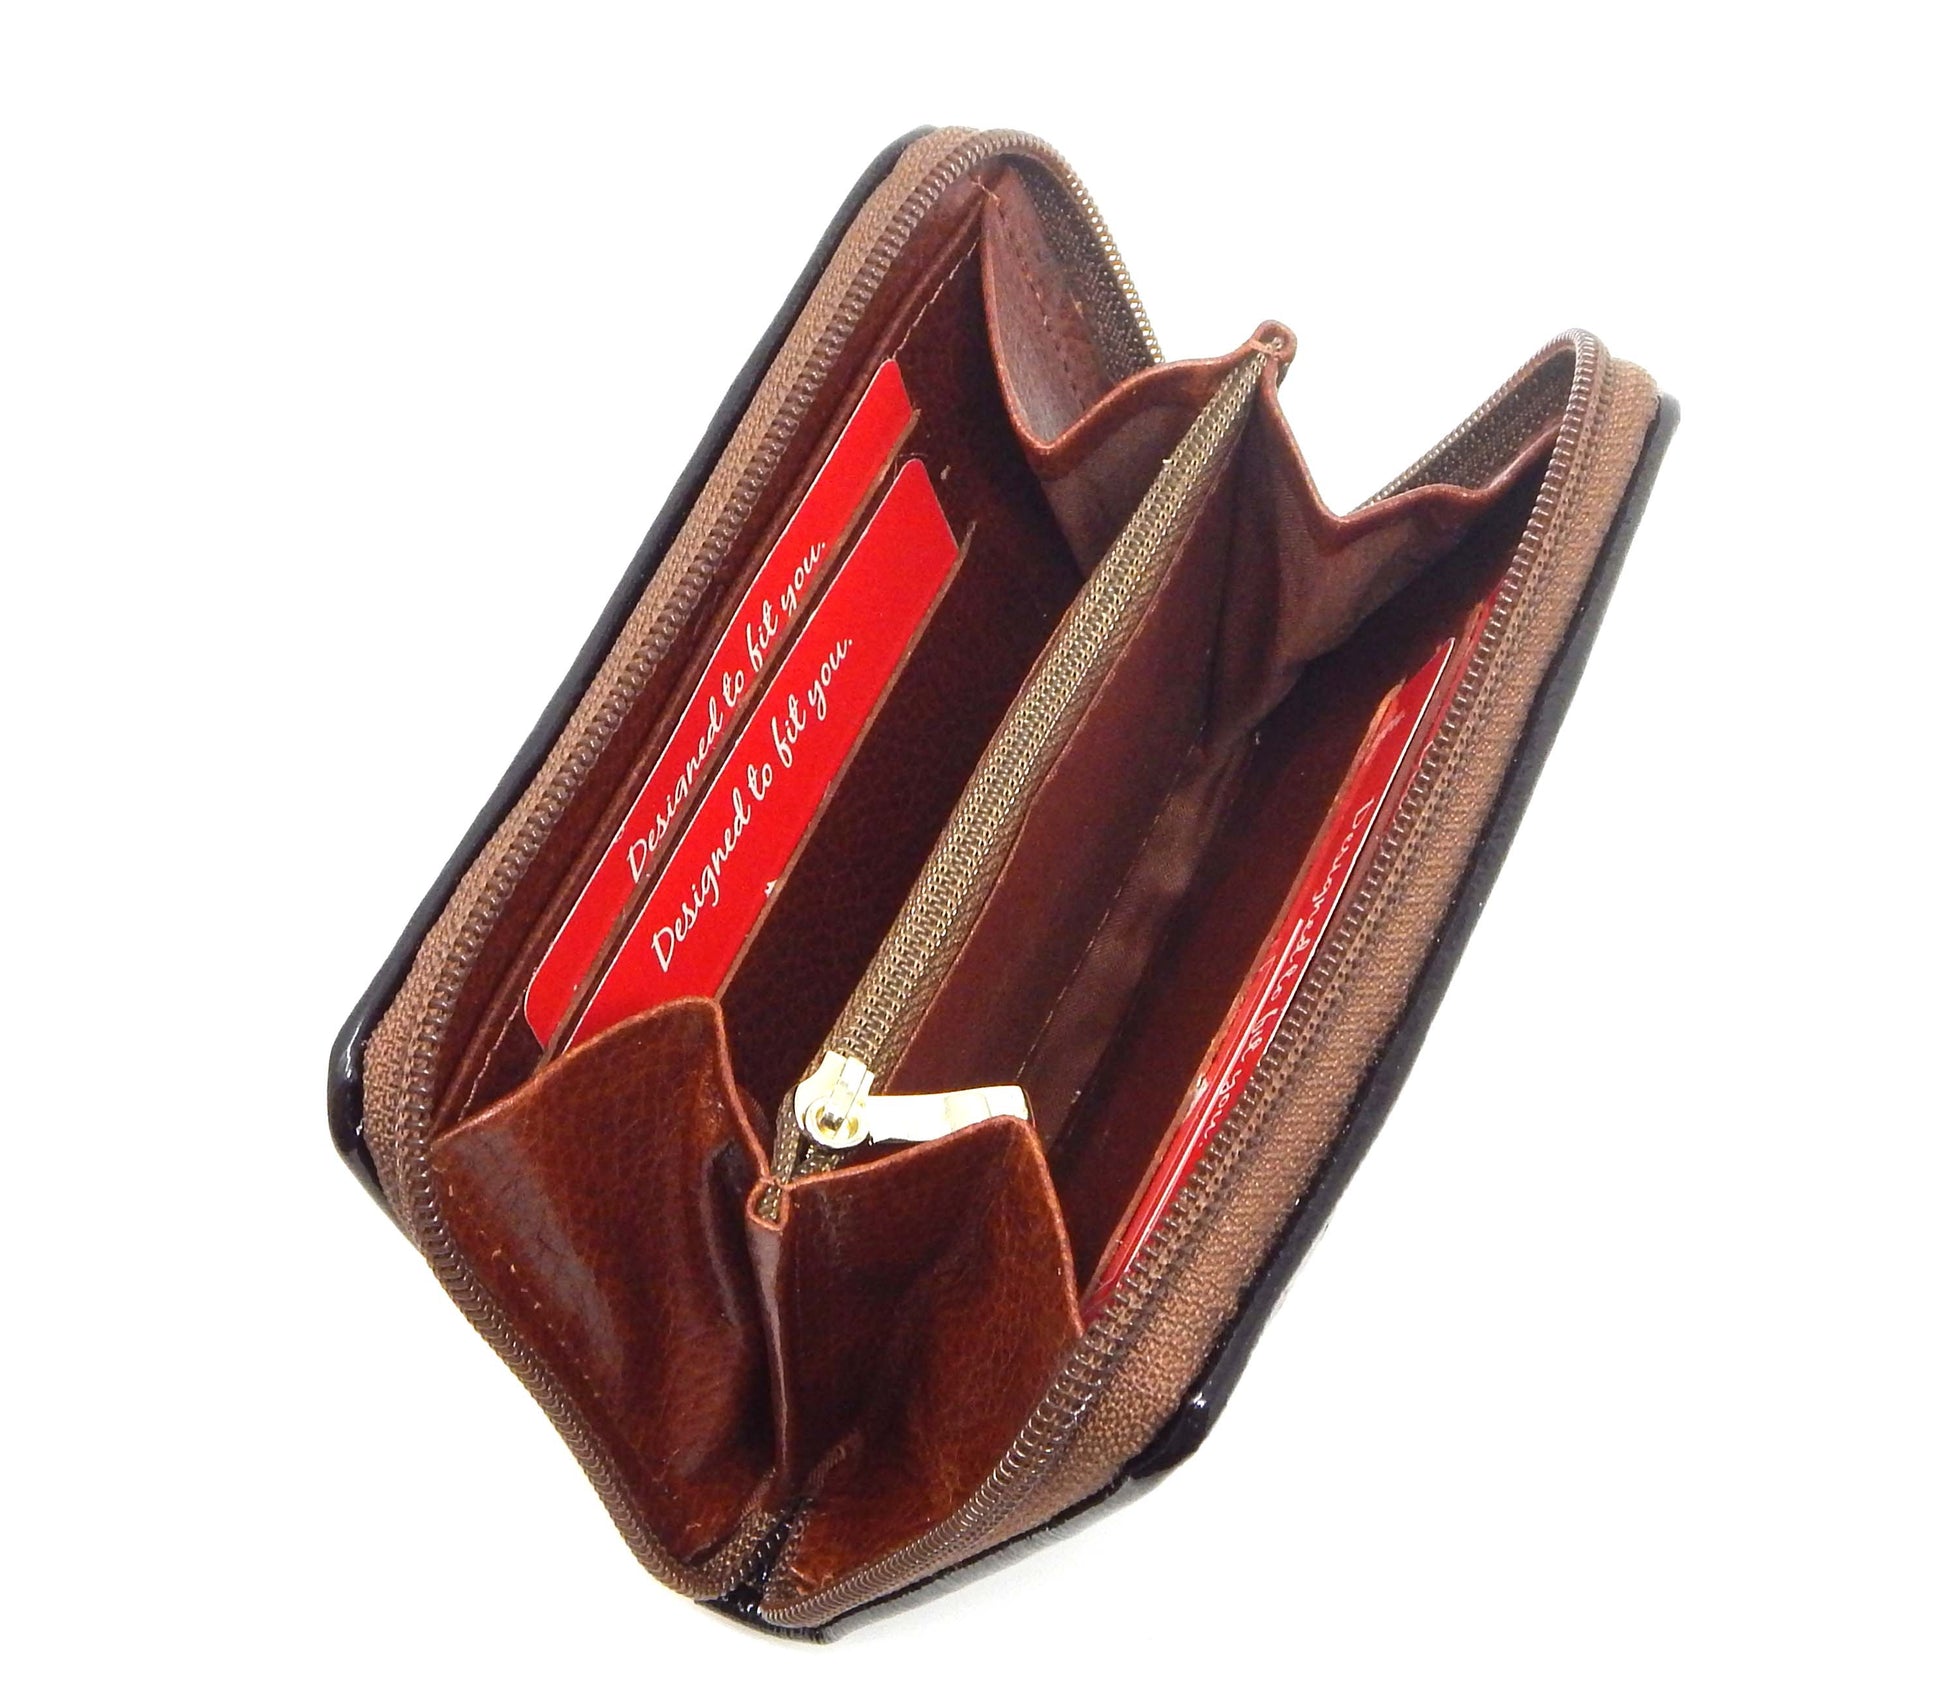 Cavalinho Honor Leather Card Holder Wallet - SaddleBrown - 28190217.13.99_4